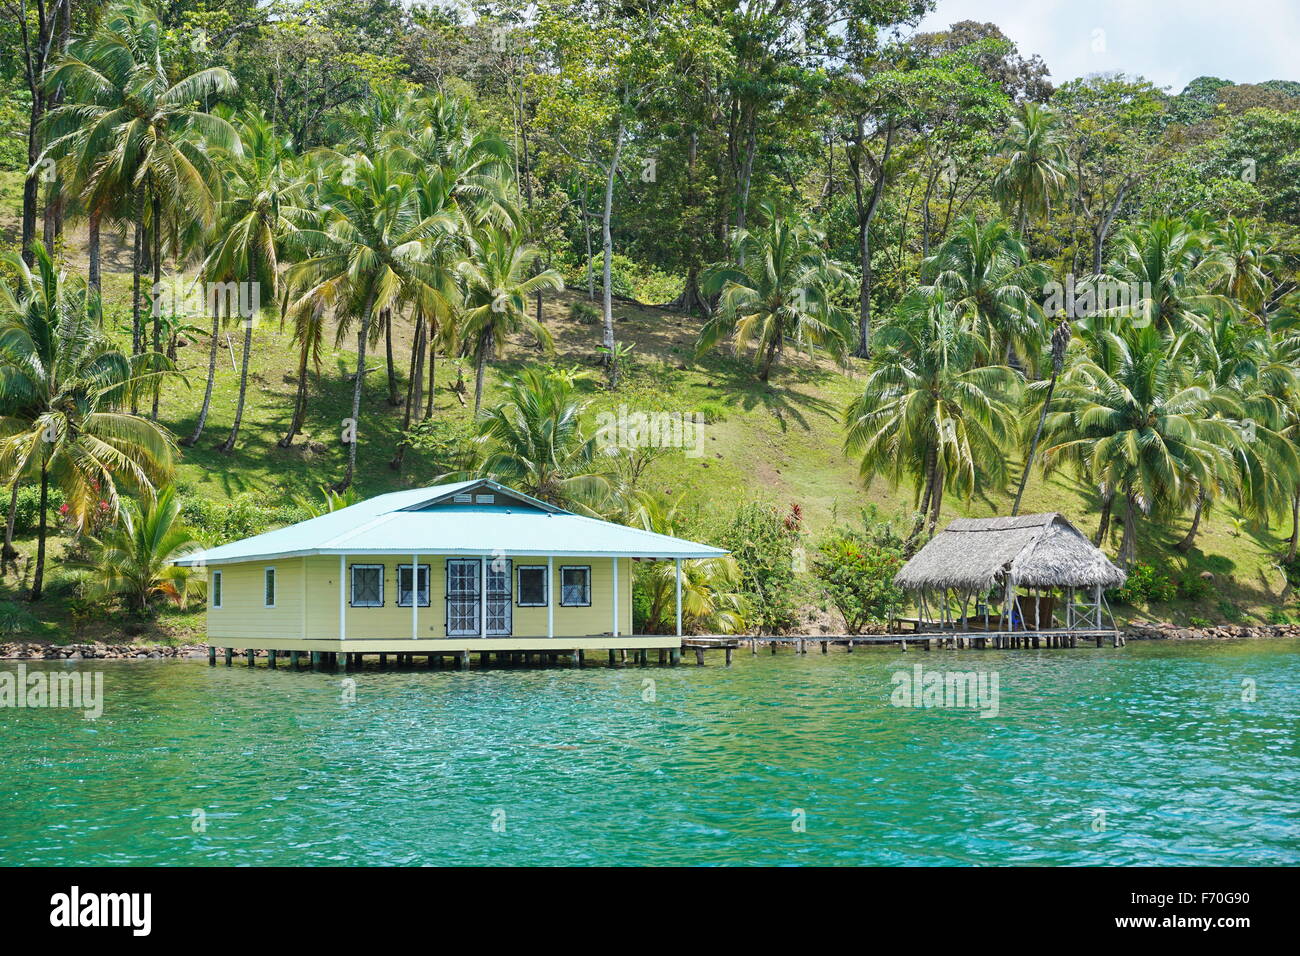 Casa y cabaña sobre el agua, con cocoteros en la tierra, la costa Caribe de Panamá, Bocas del Toro, América Central Foto de stock